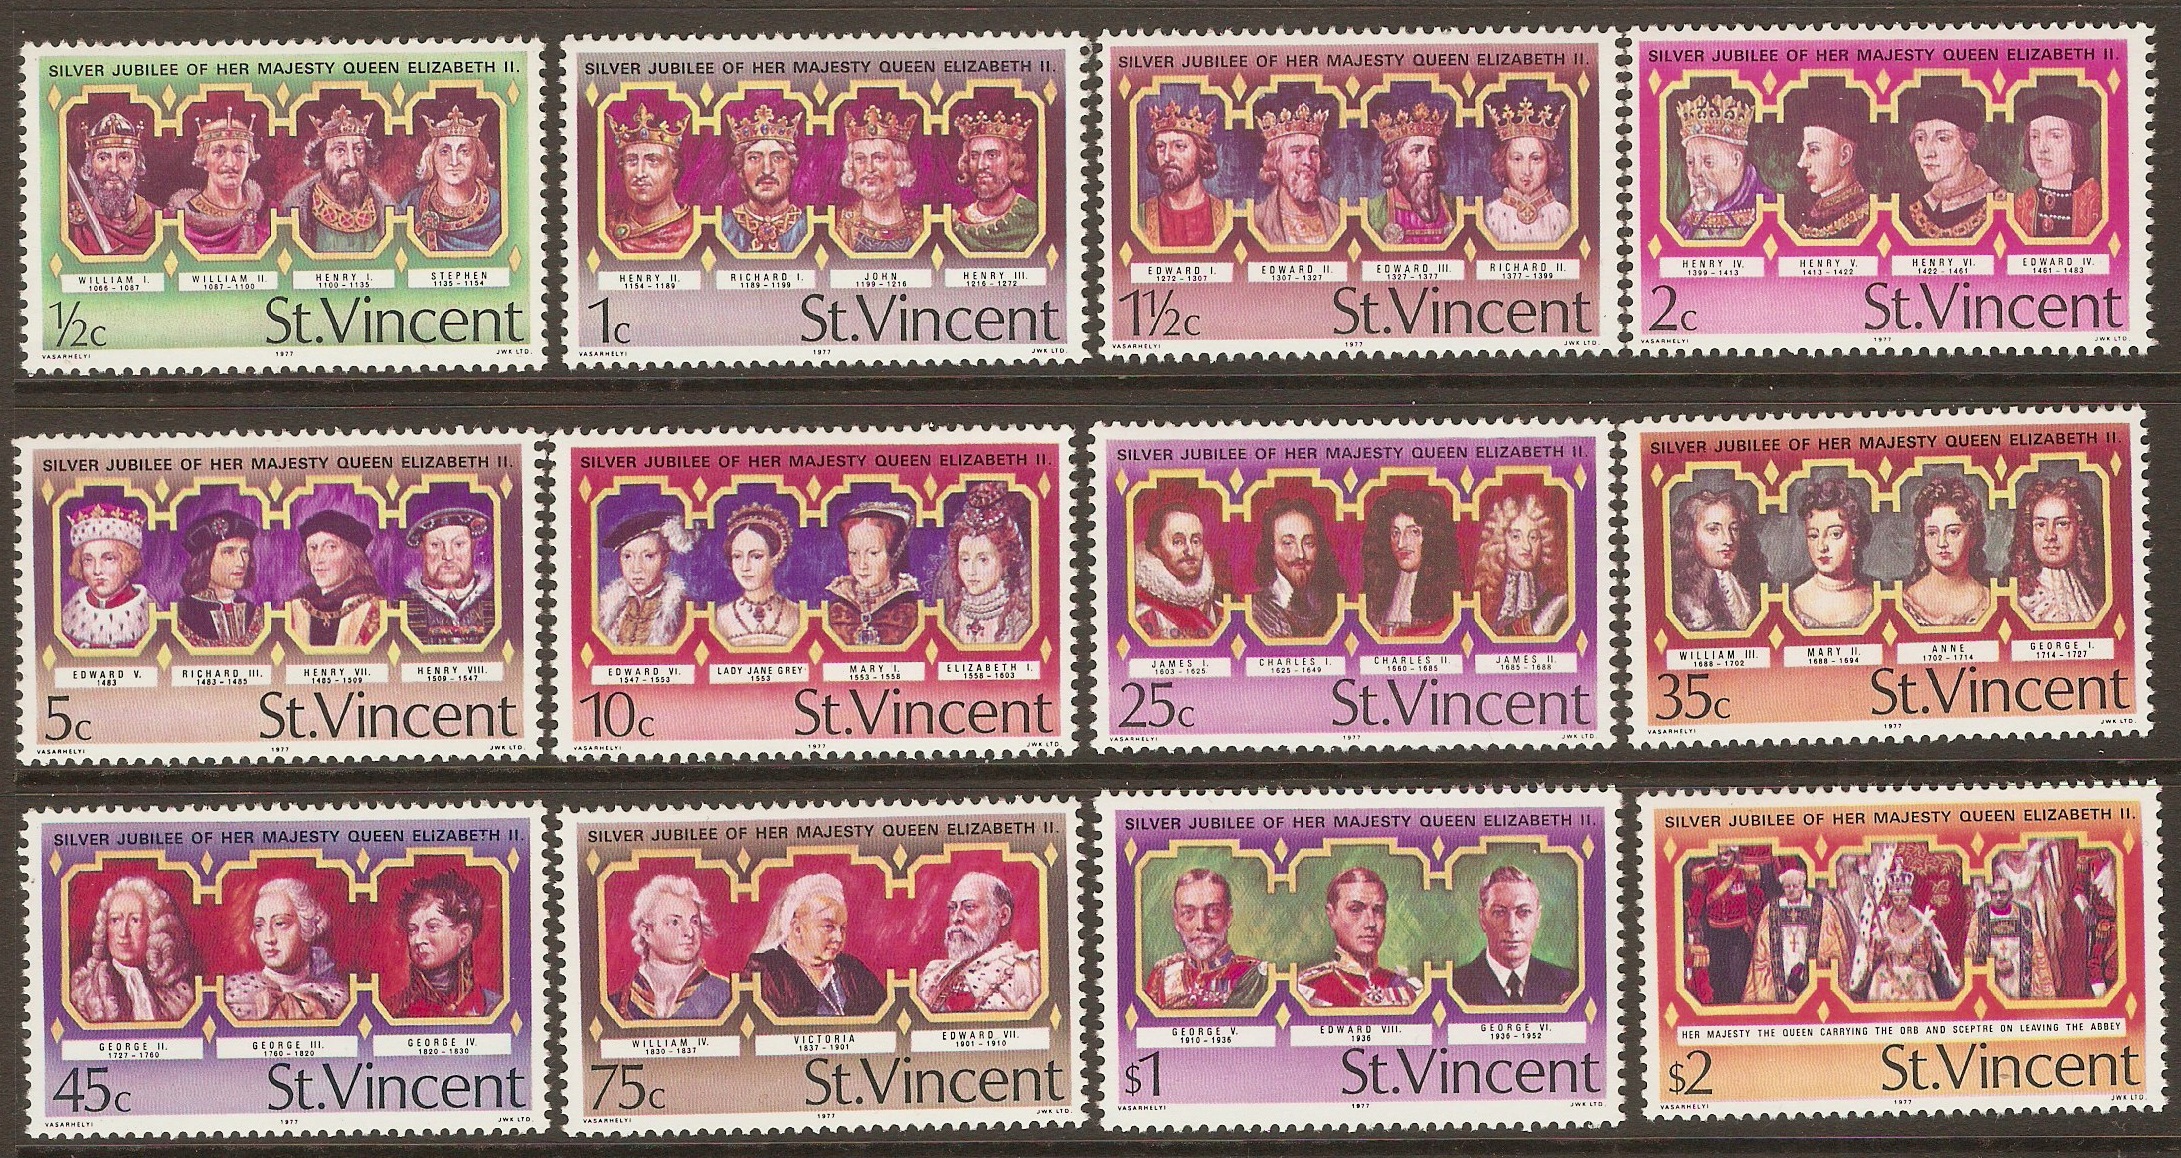 St Vincent 1977 Silver Jubilee set. SG502-SG513.